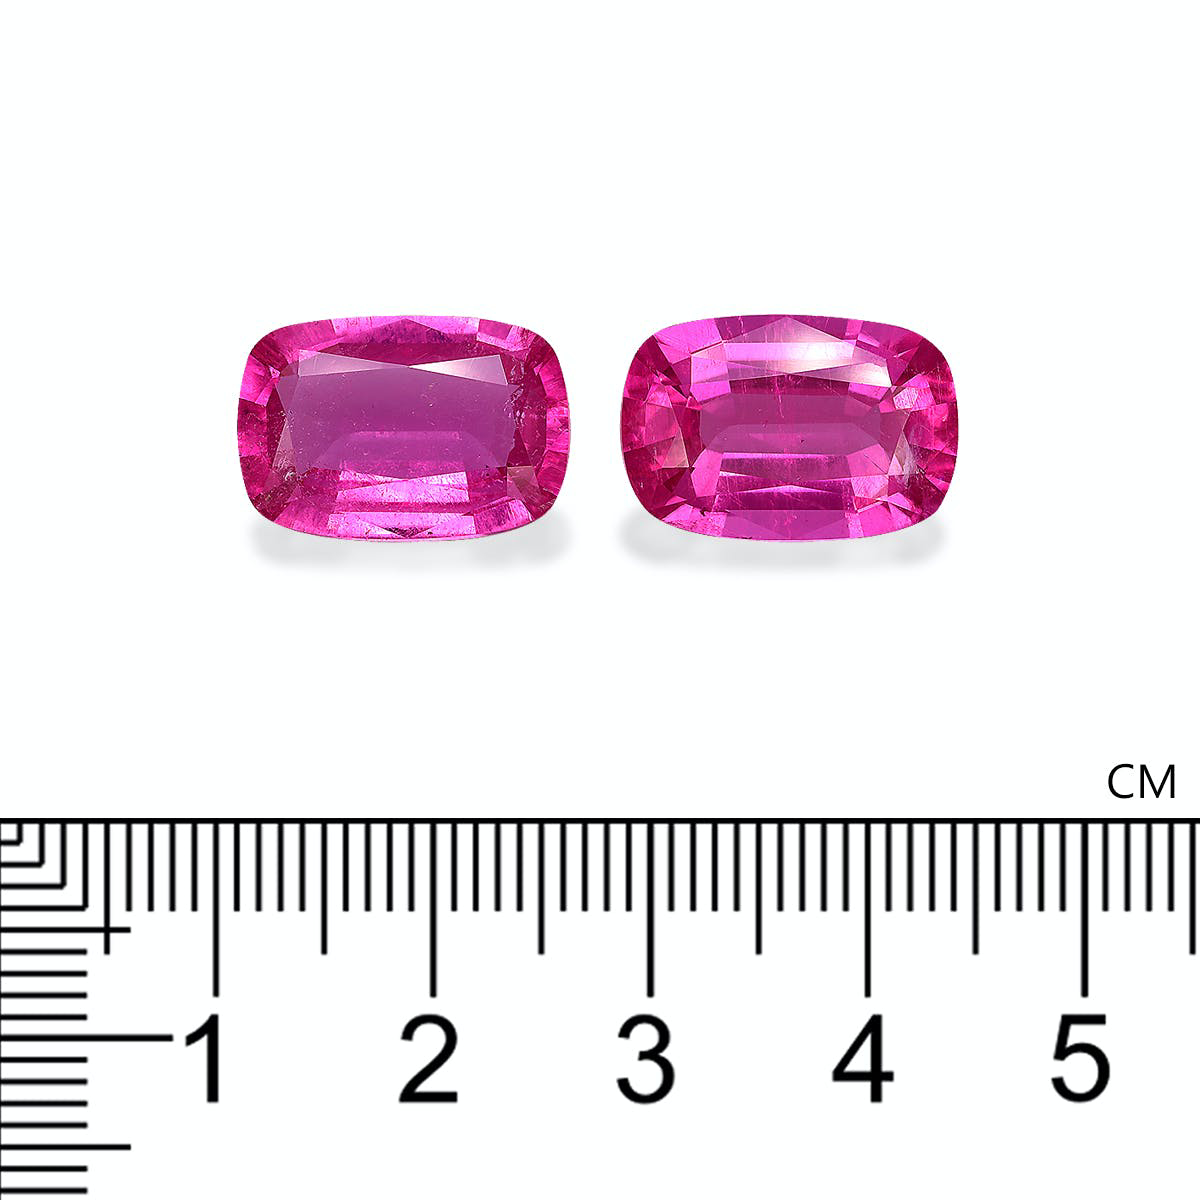 Fuscia Pink Rubellite Tourmaline 13.23ct - Pair (RL1197)